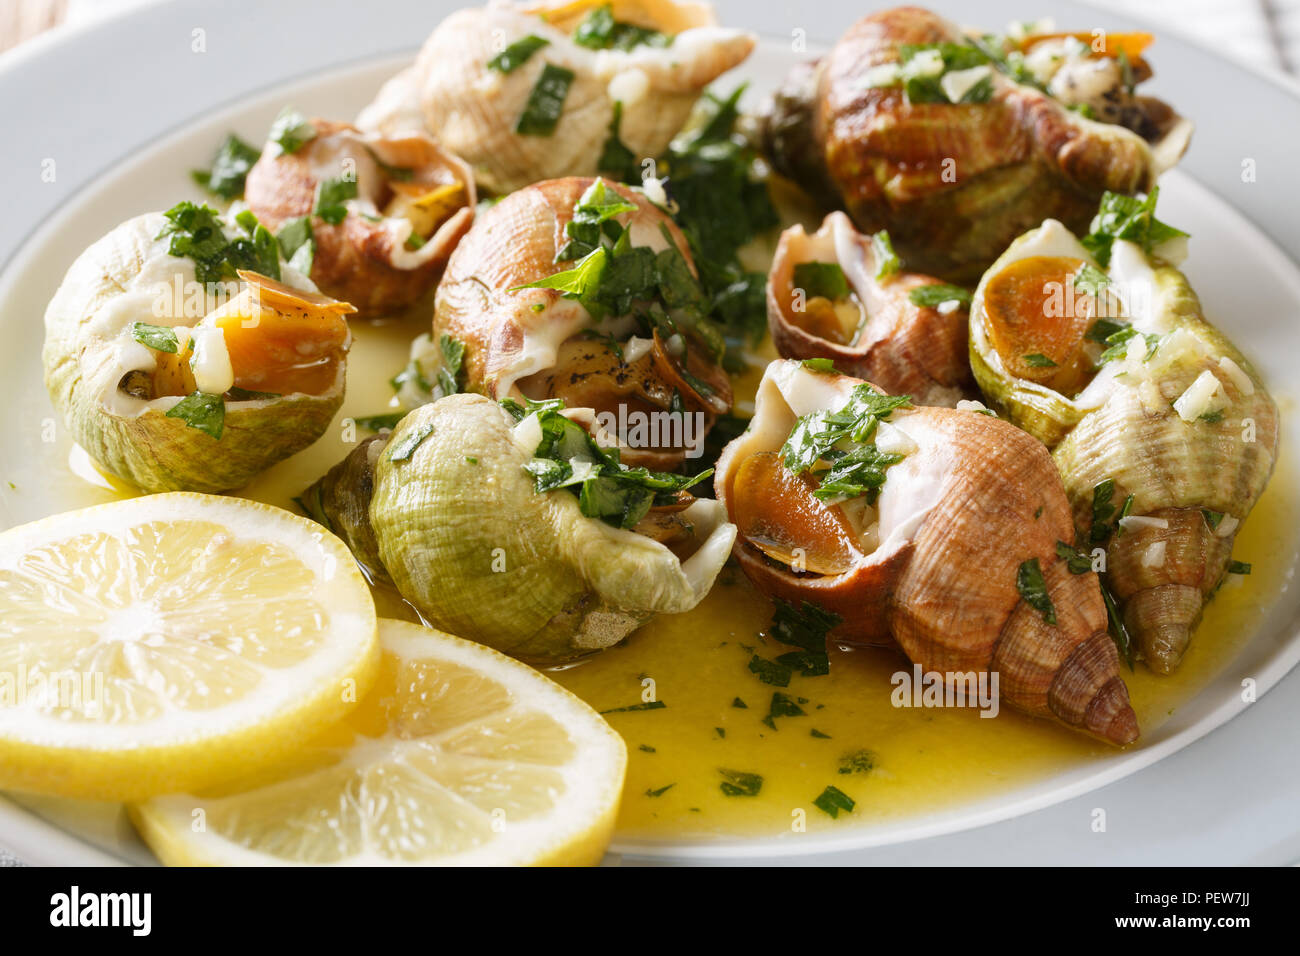 Feinkost Essen: wellhornschnecken, Seeschnecken bulot mit Knoblauch, Petersilie und Zitrone close-up auf einem Teller. Horizontale Stockfoto